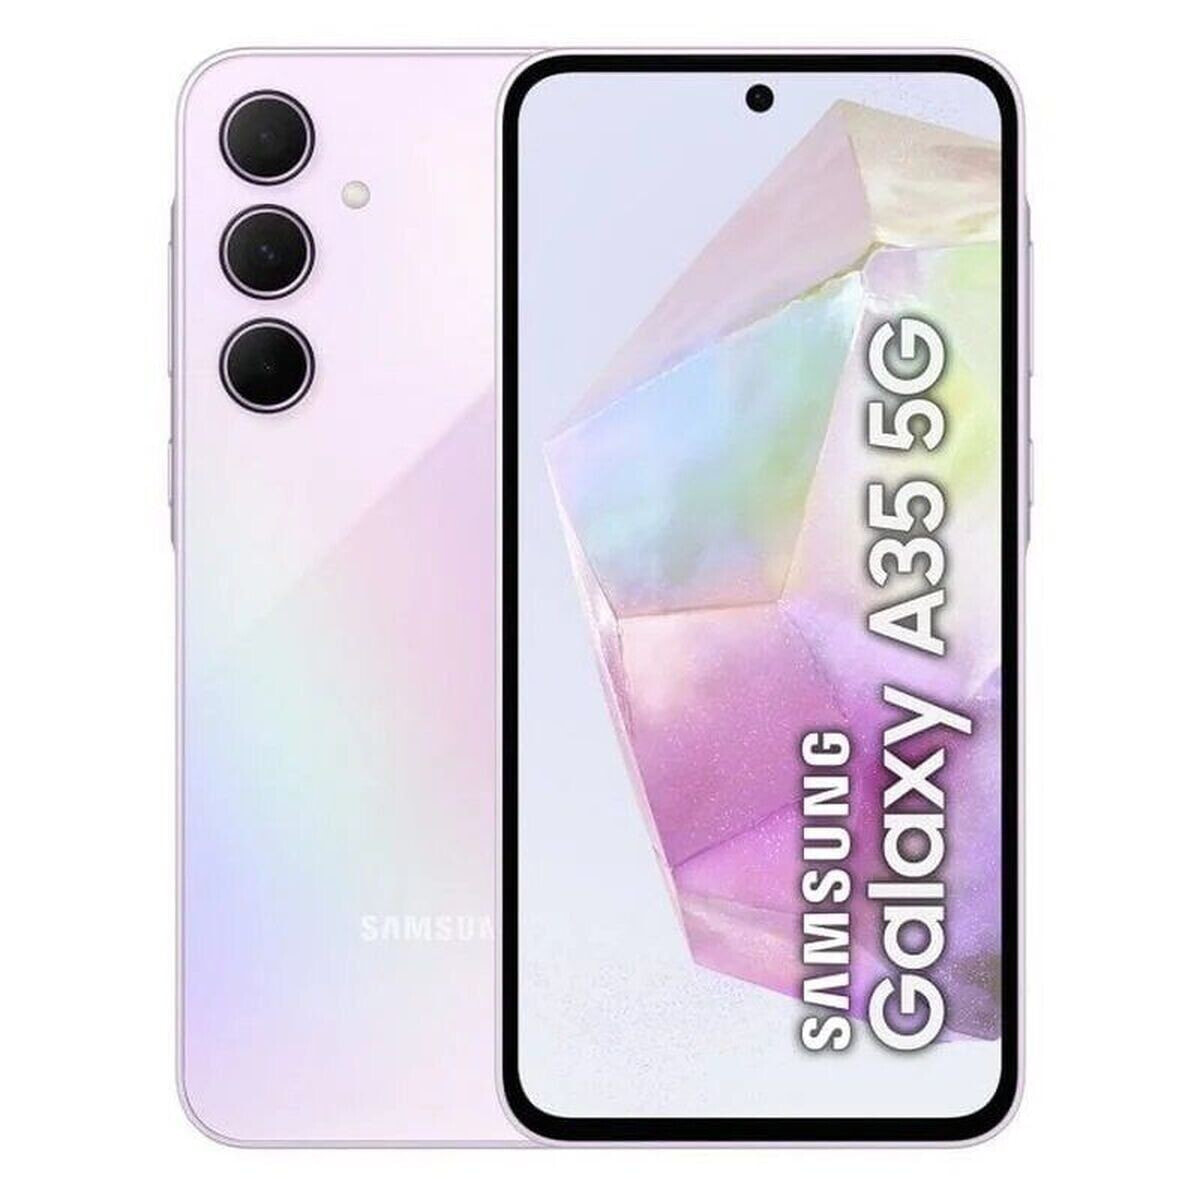 Samsung Galaxy A35 5G 16,8 cm (6.6